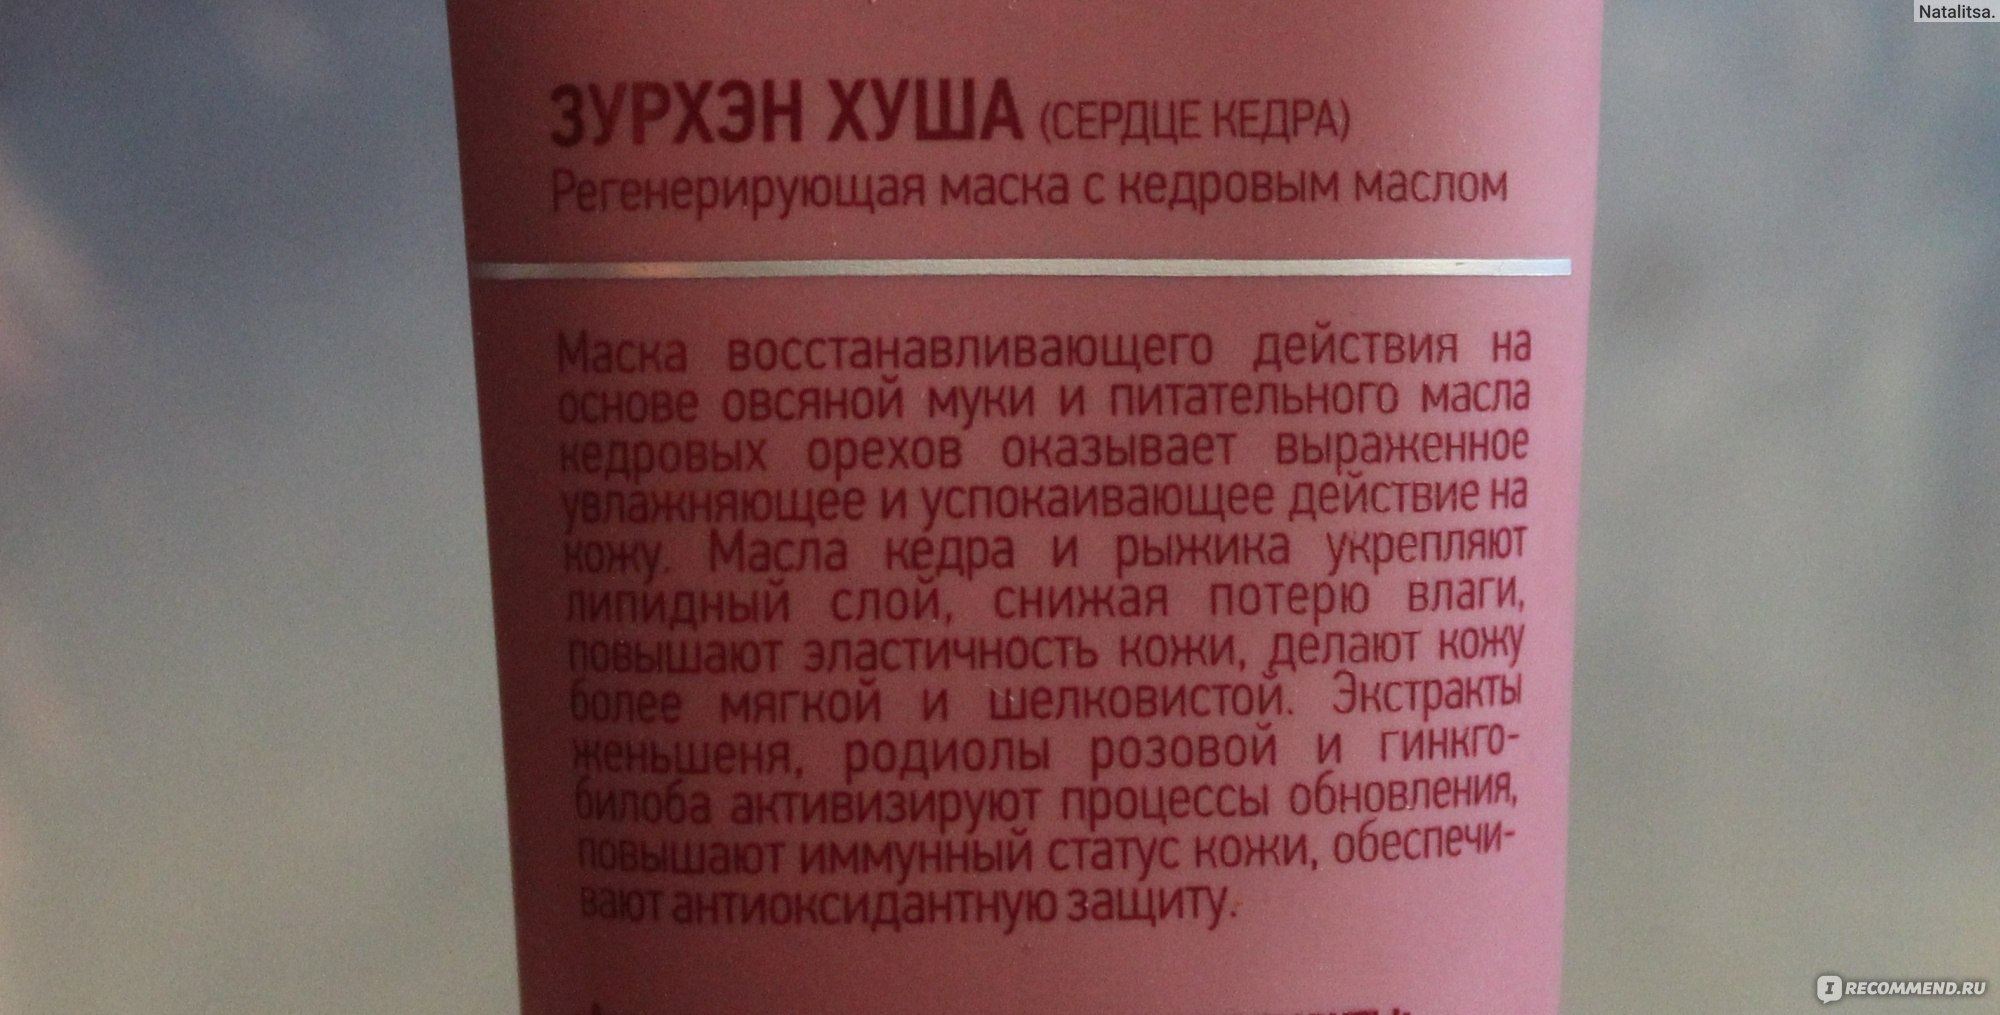 Маска для лица Siberian Wellness (Сибирское здоровье) "Зурхэн хуша" (Сердце кедра) регенерирующая фото